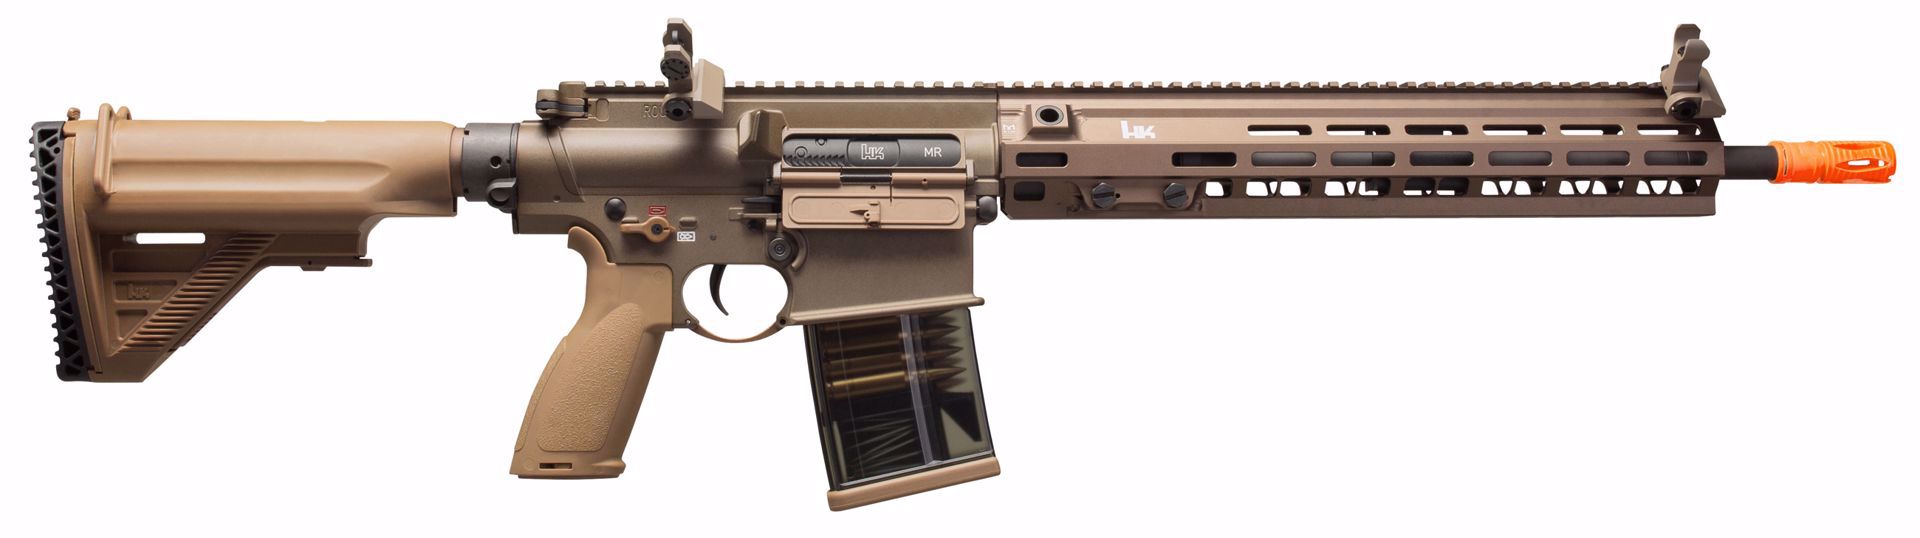 HK M110A1 AEG Airsoft Rifle | Umarex USA